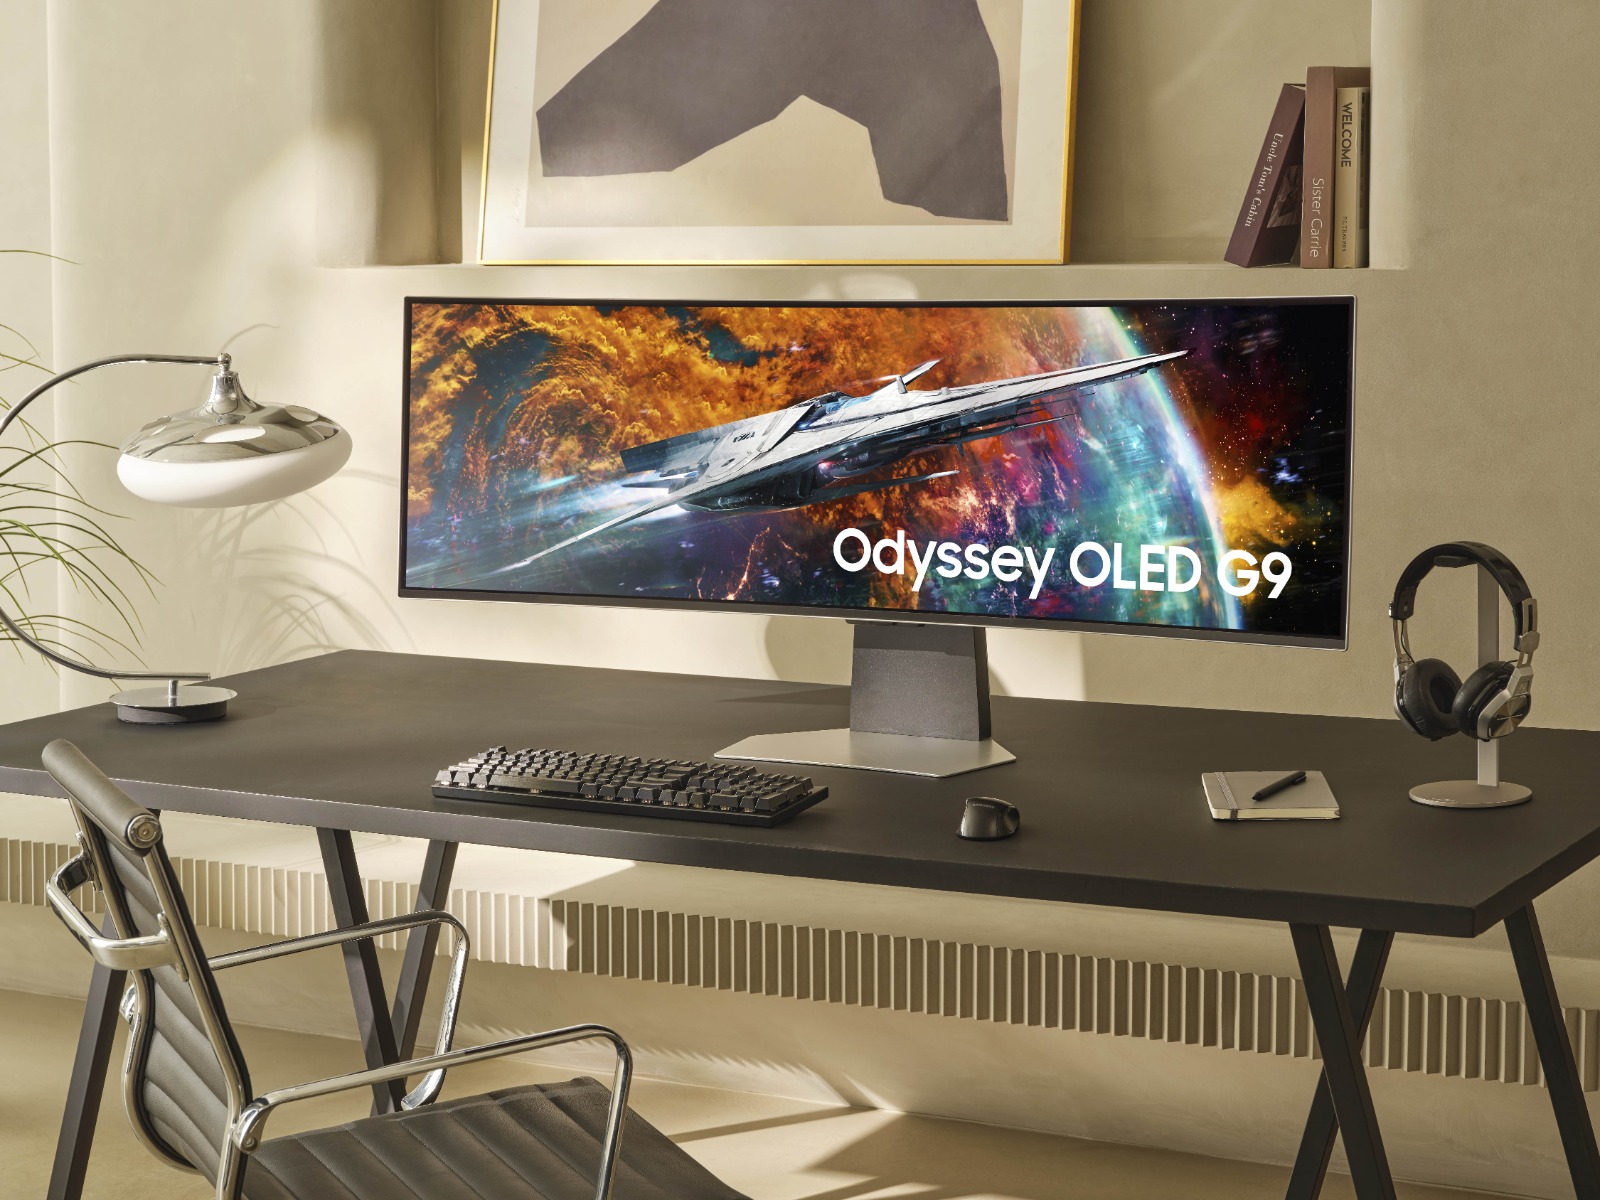 Samsung ra mắt Odyssey OLED G9: Màn hình OLED dành cho game thủ tỷ lệ 32:9 - Ảnh 2.